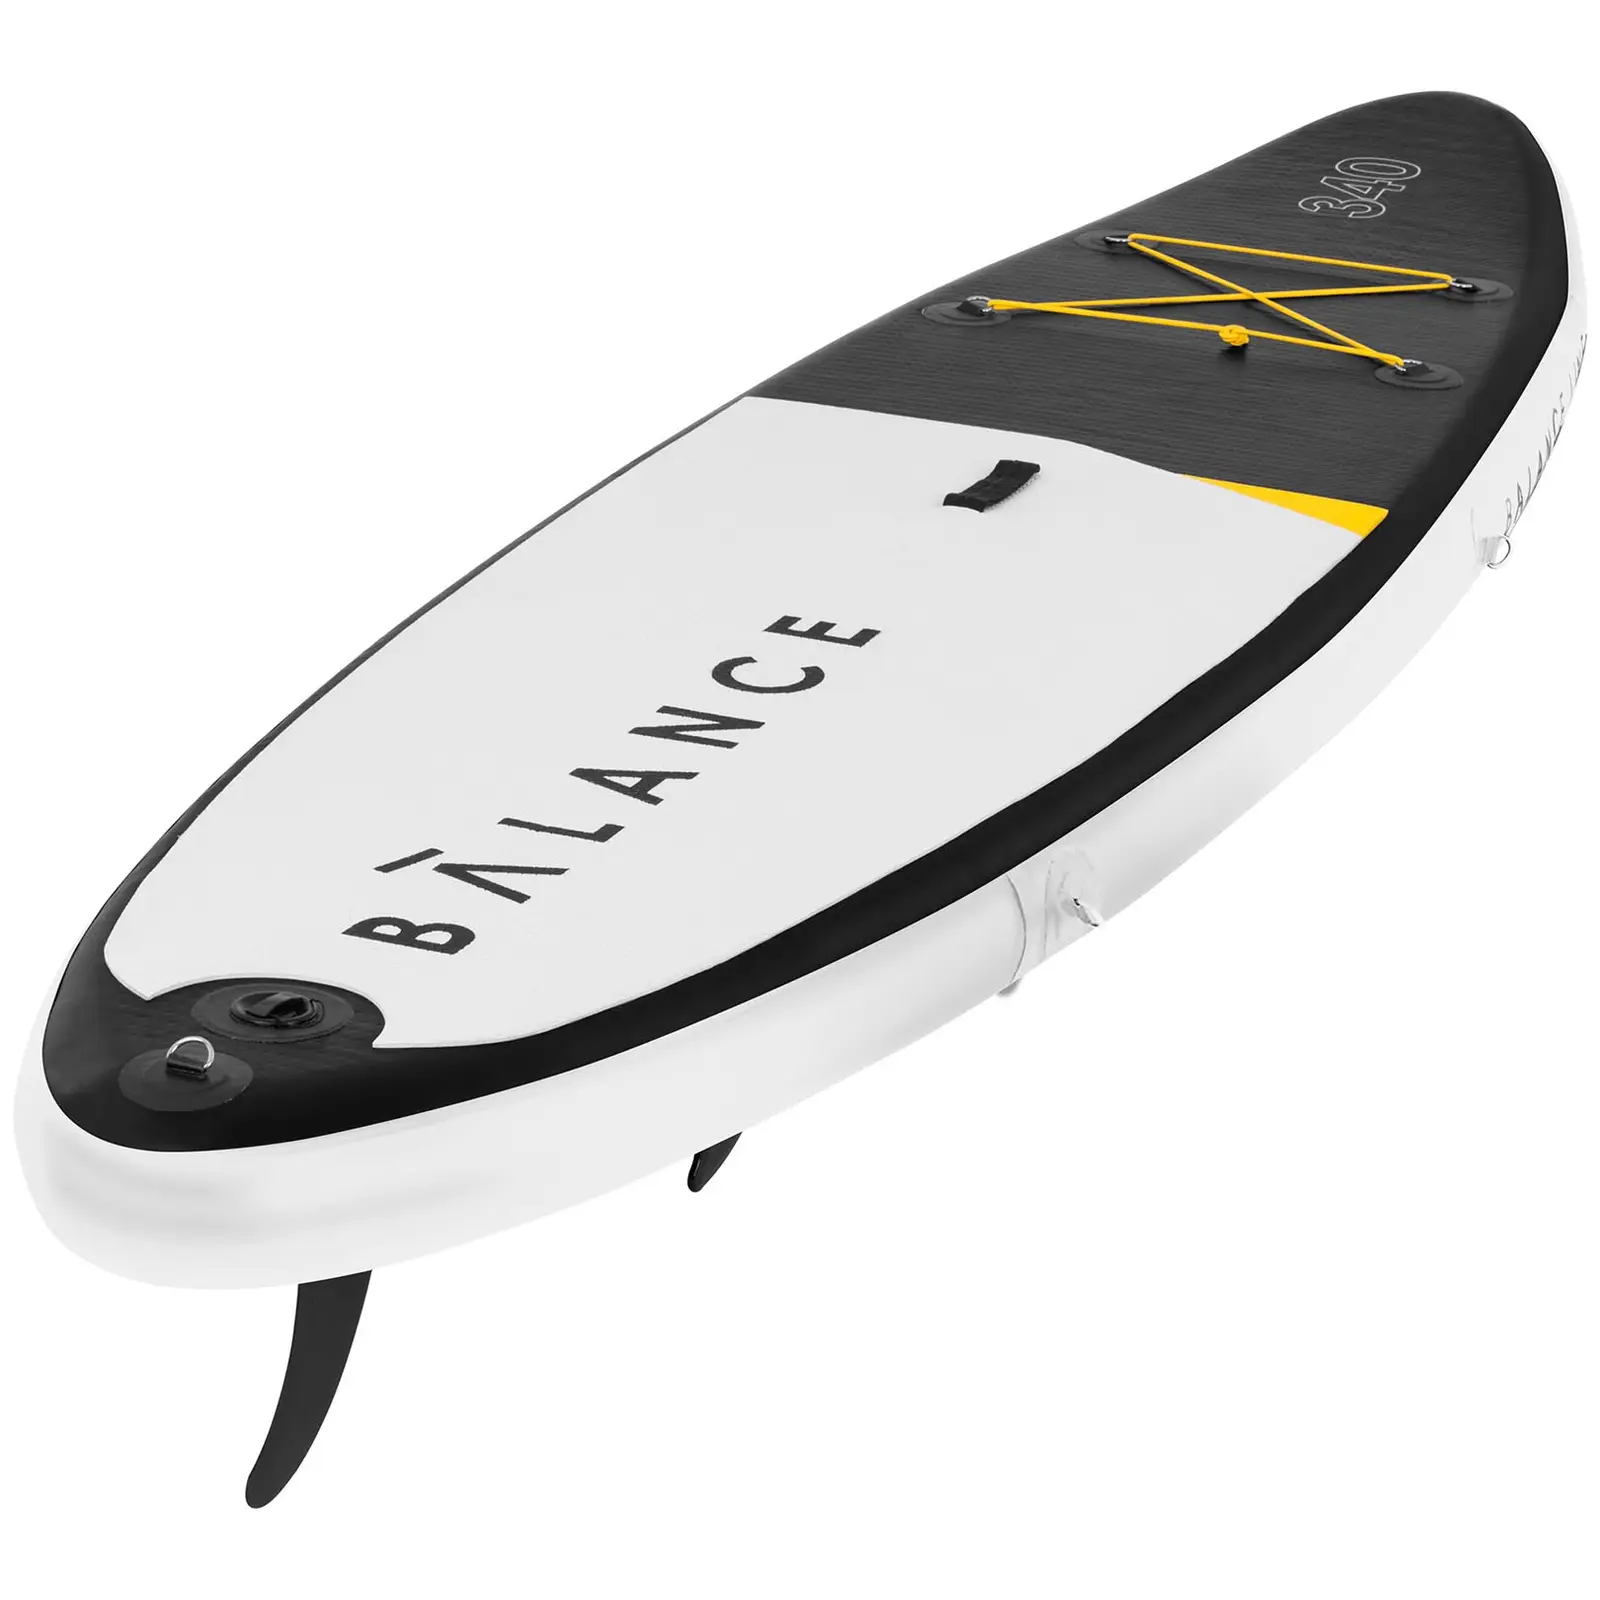 Paddle-board - 145 kg - 335 x 79 x 15 cm